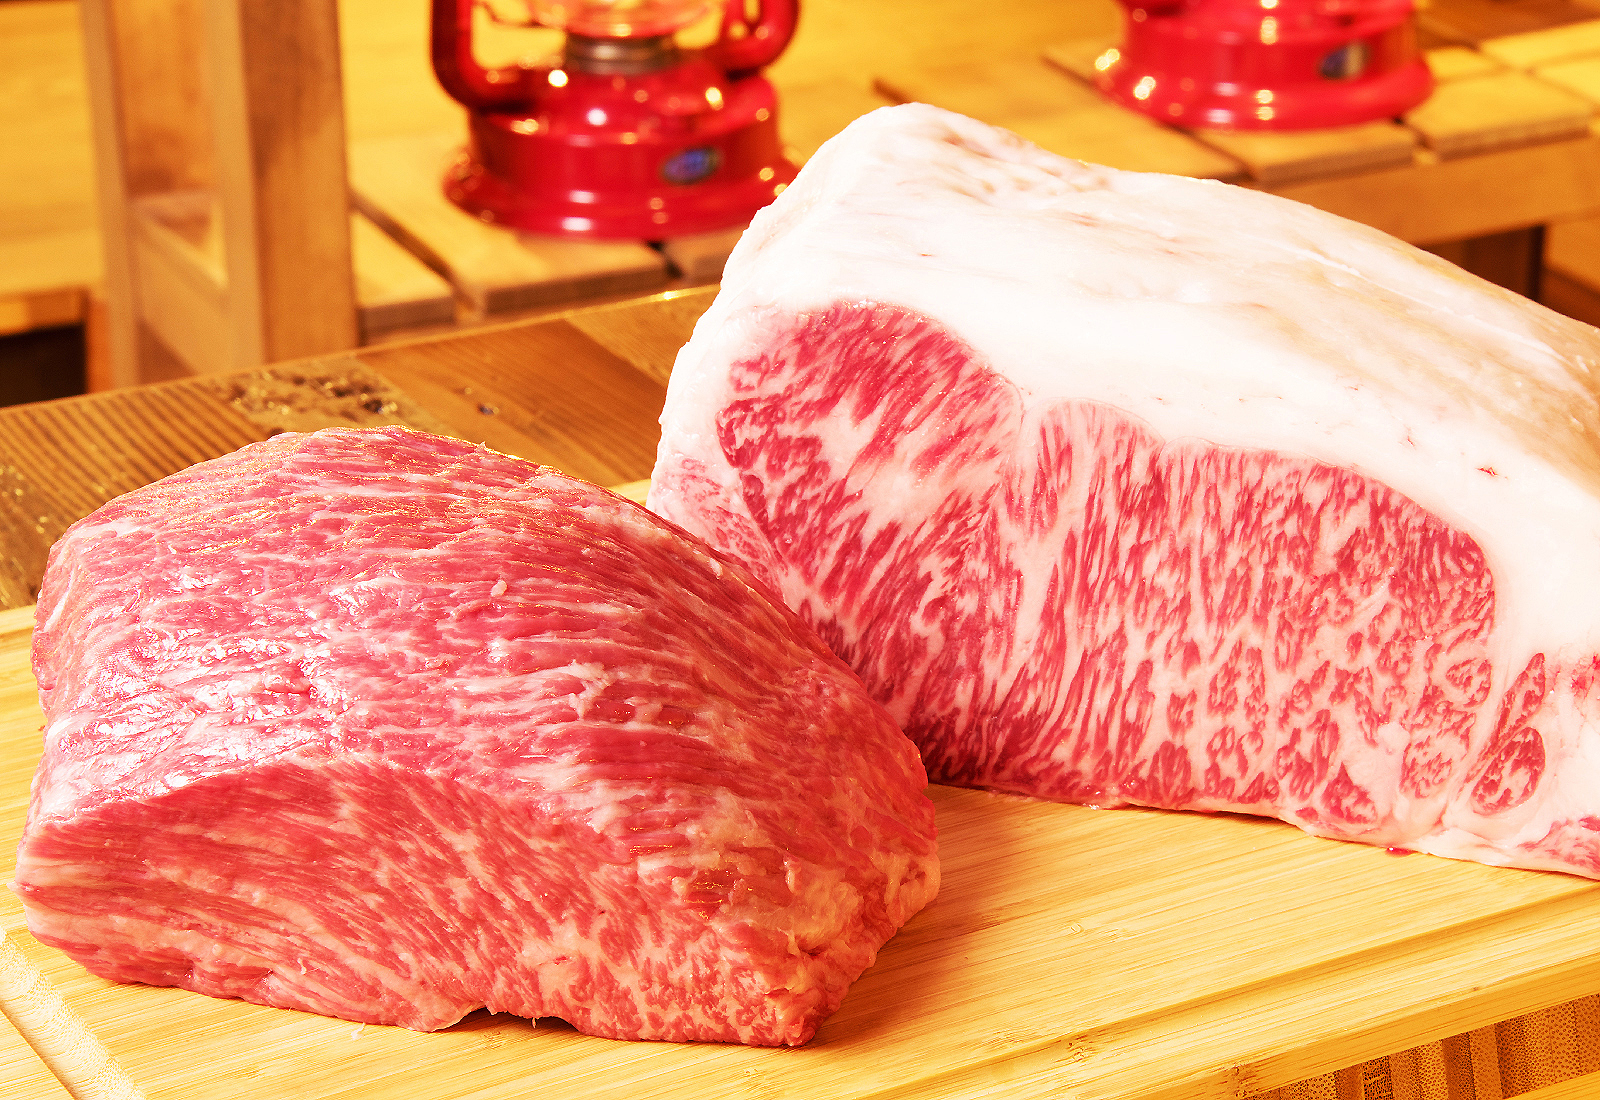 左が松阪牛の赤身、右が松阪牛のサーロイン。高級な国産牛肉は、赤身でもサシが十分入っています